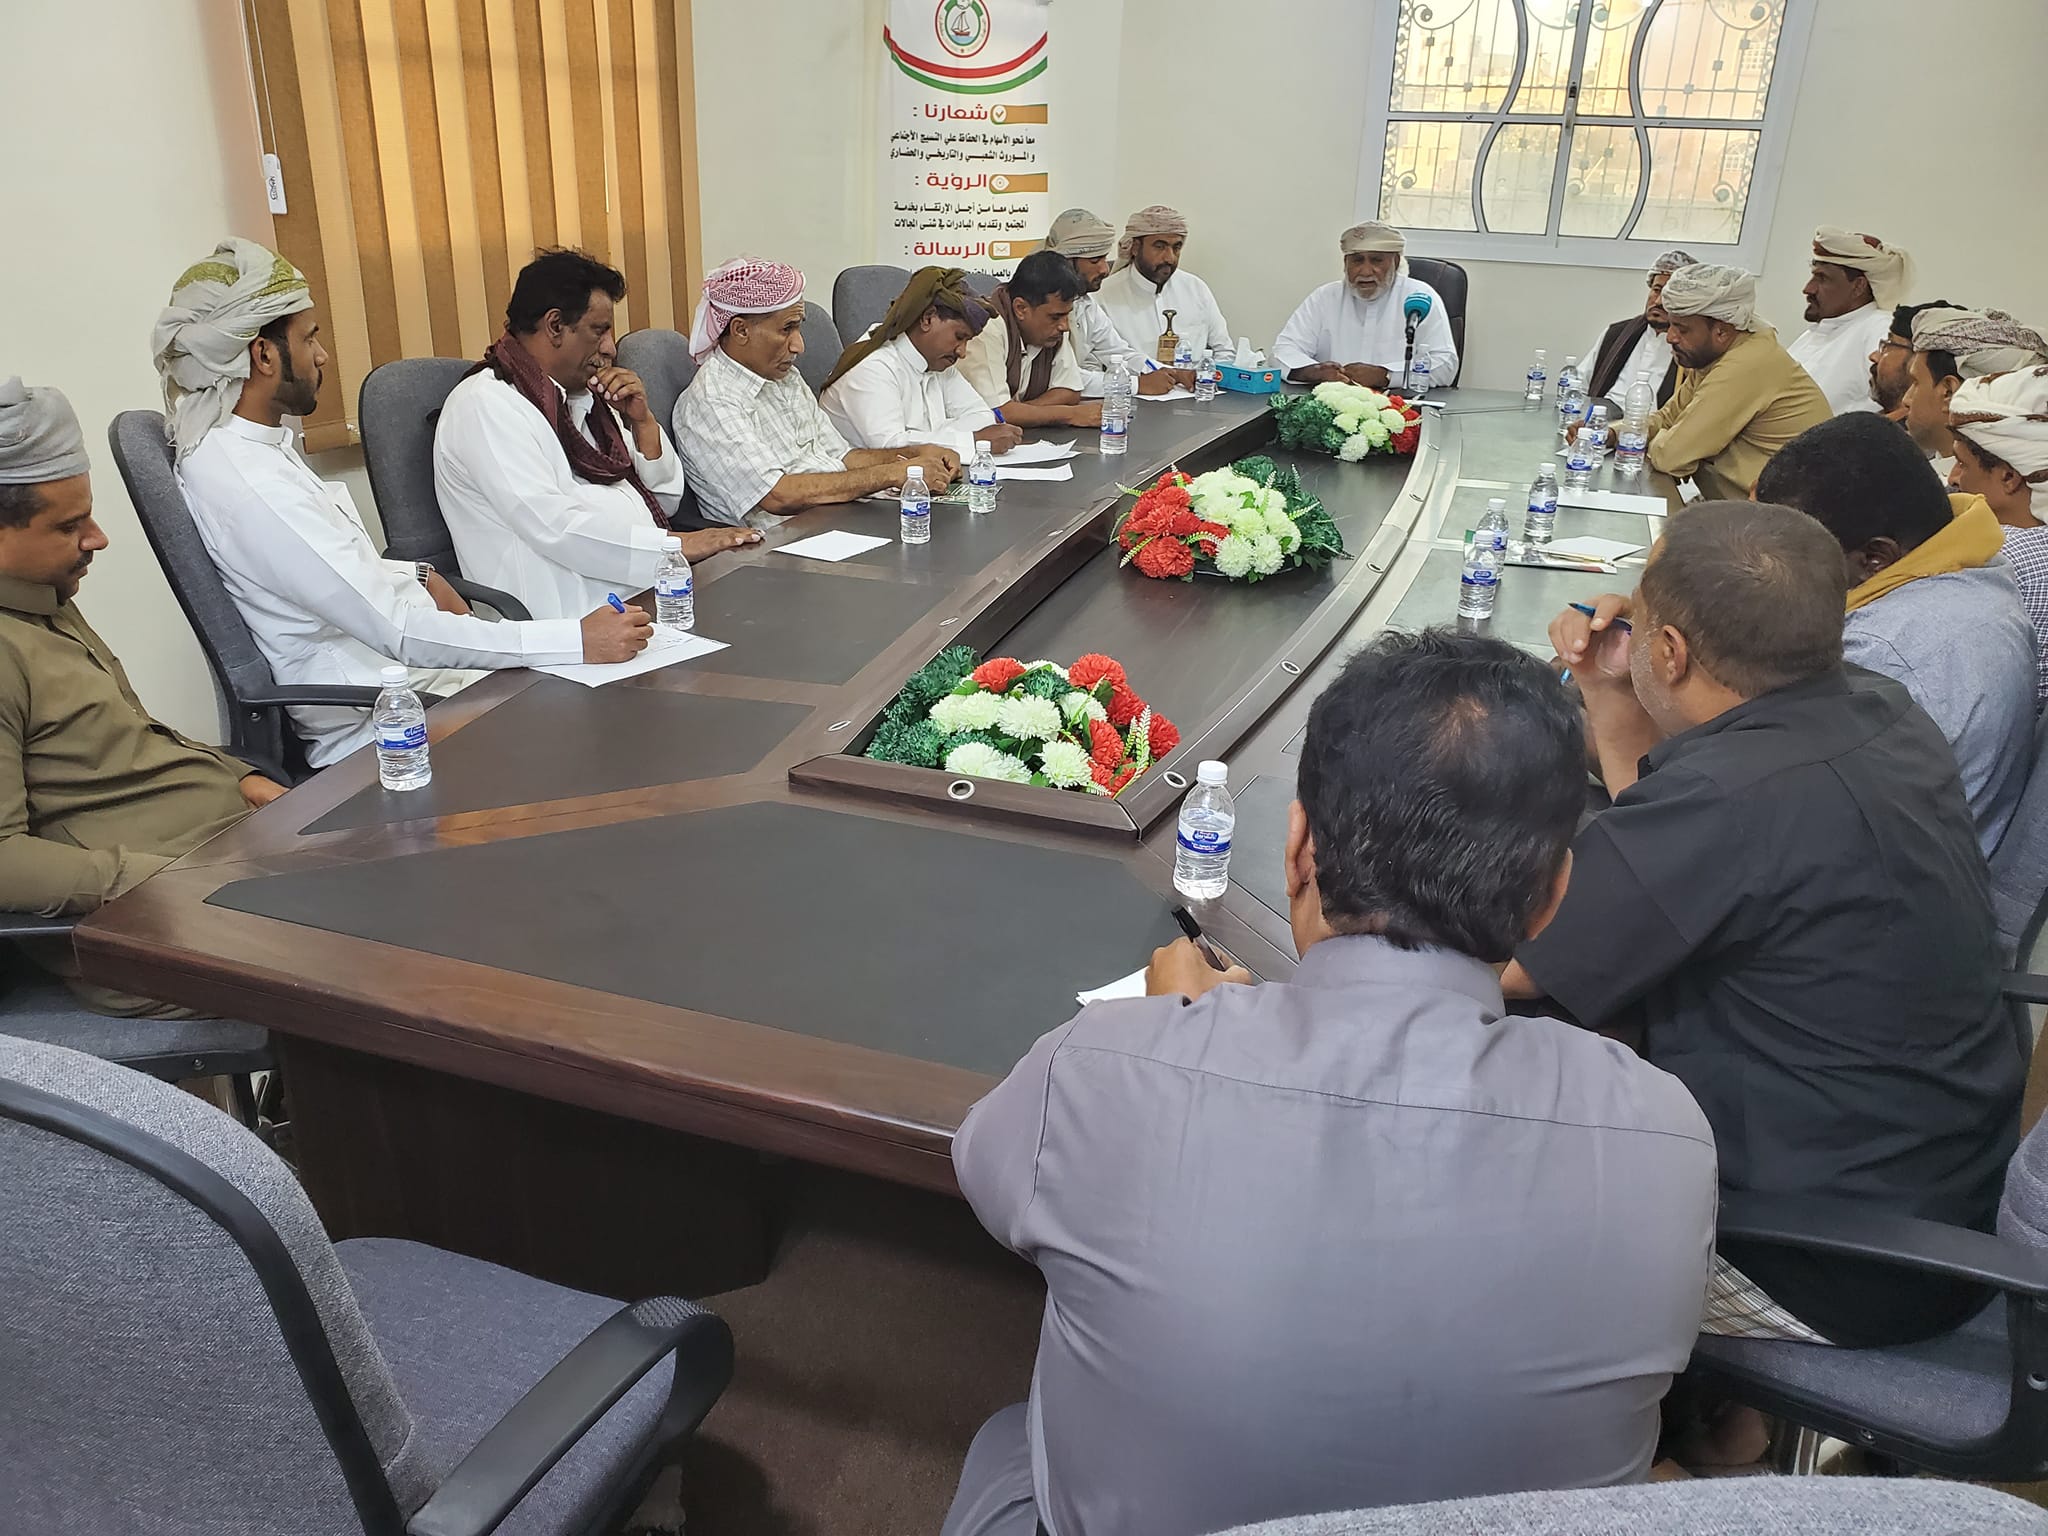 لجنة الاعتصام السلمي في محافظة المهرة تعقد اجتماعا استثنائيا لمناقشة اخر المستجدات